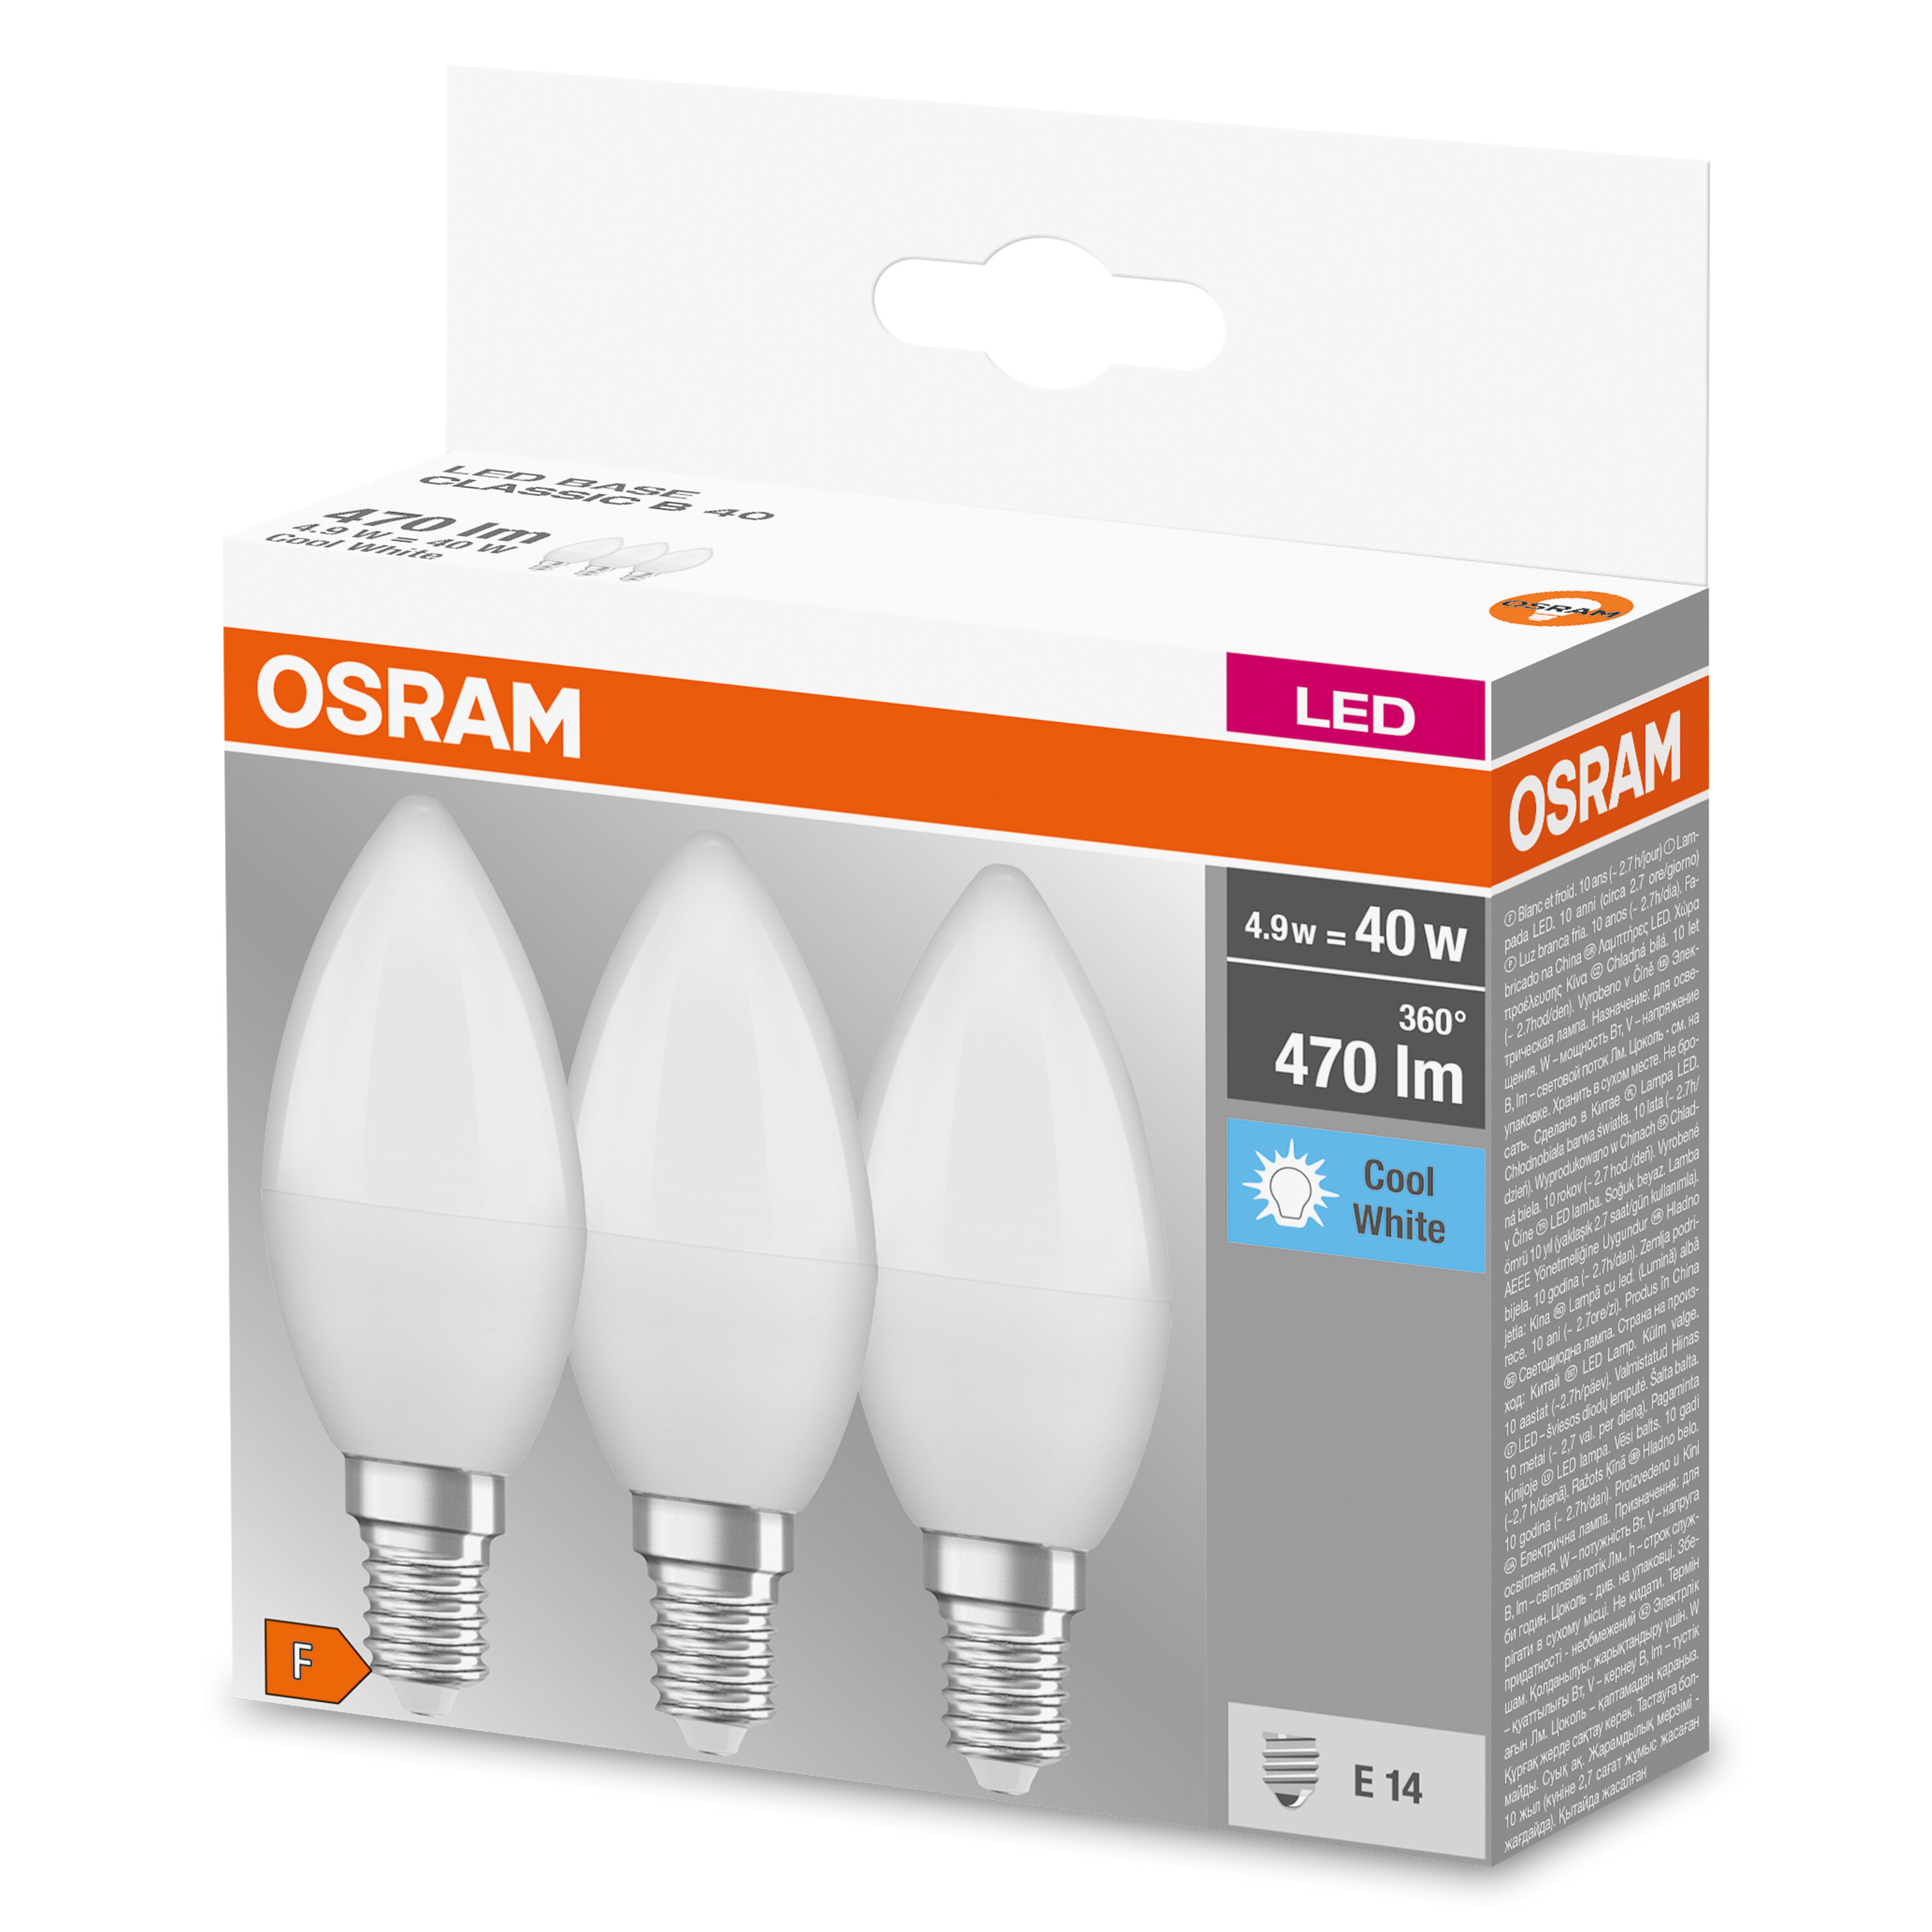 OSRAM  LED BASE LED B Lampe Kaltweiß lumen 470 CLASSIC